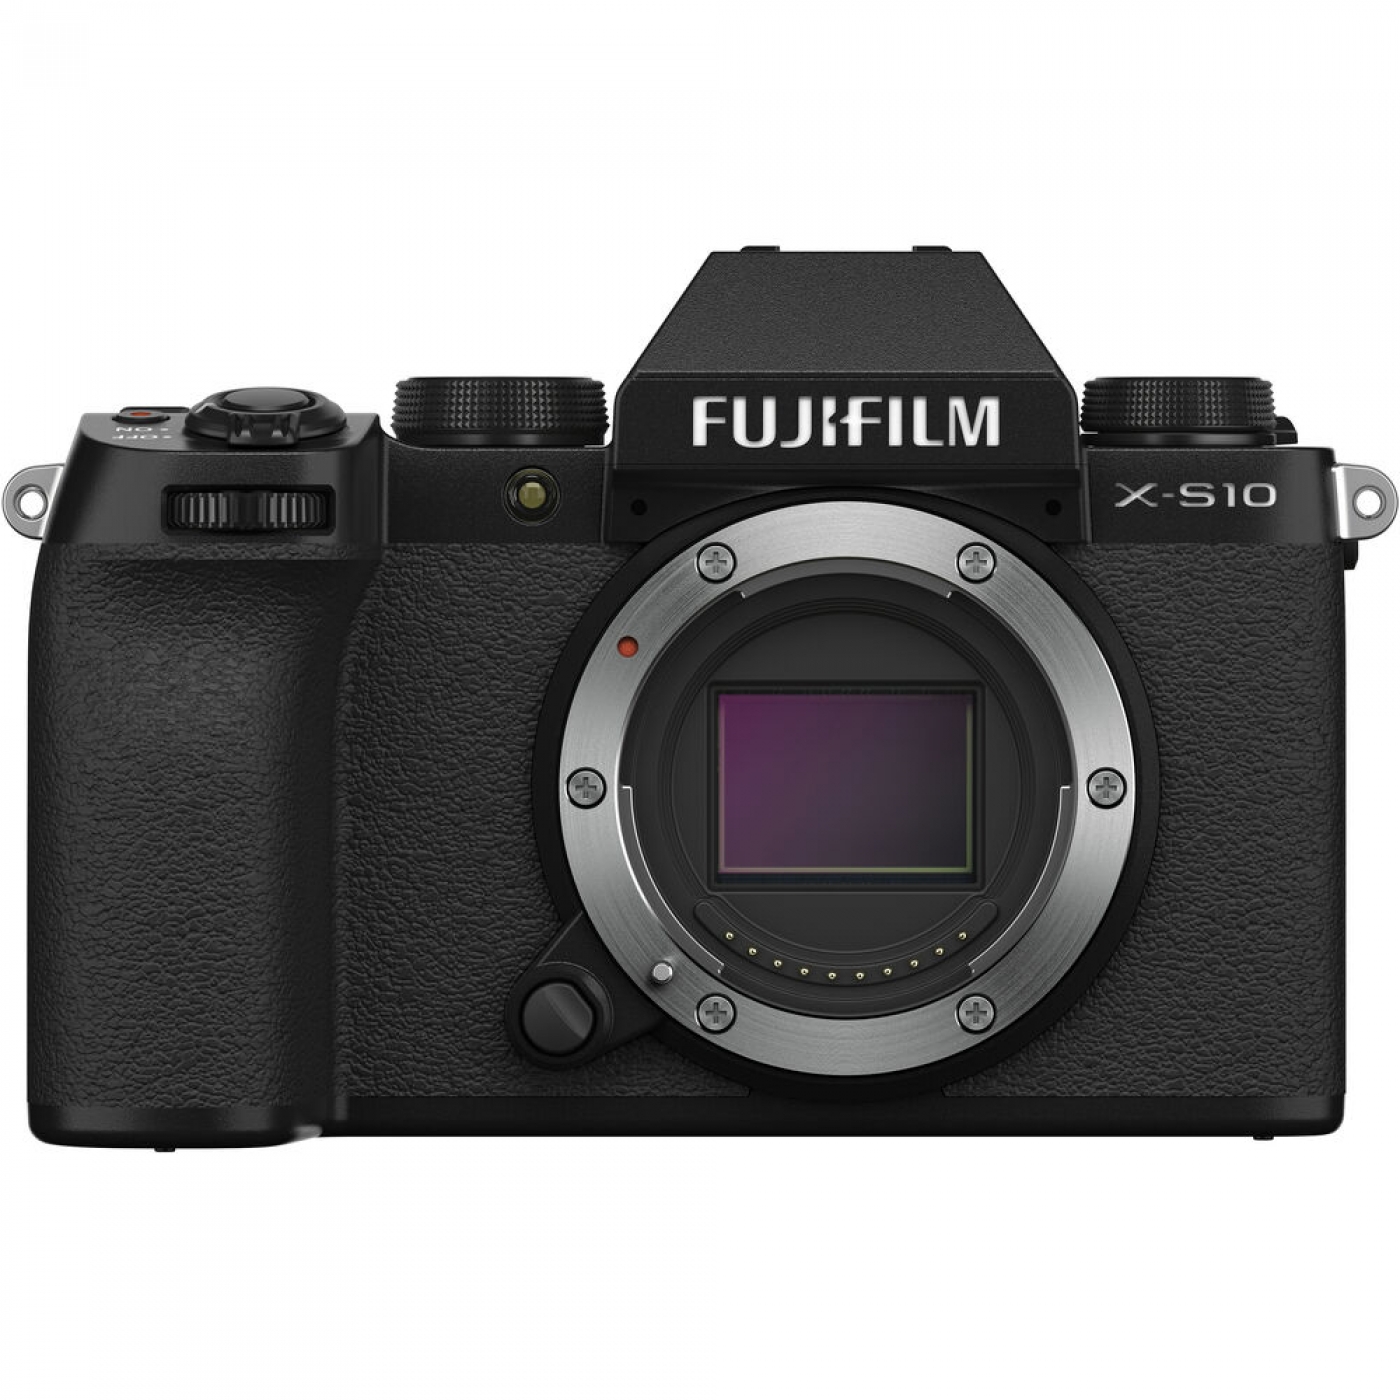 Aktualizacja oprogramowania aparatów Fujifilm X-S10